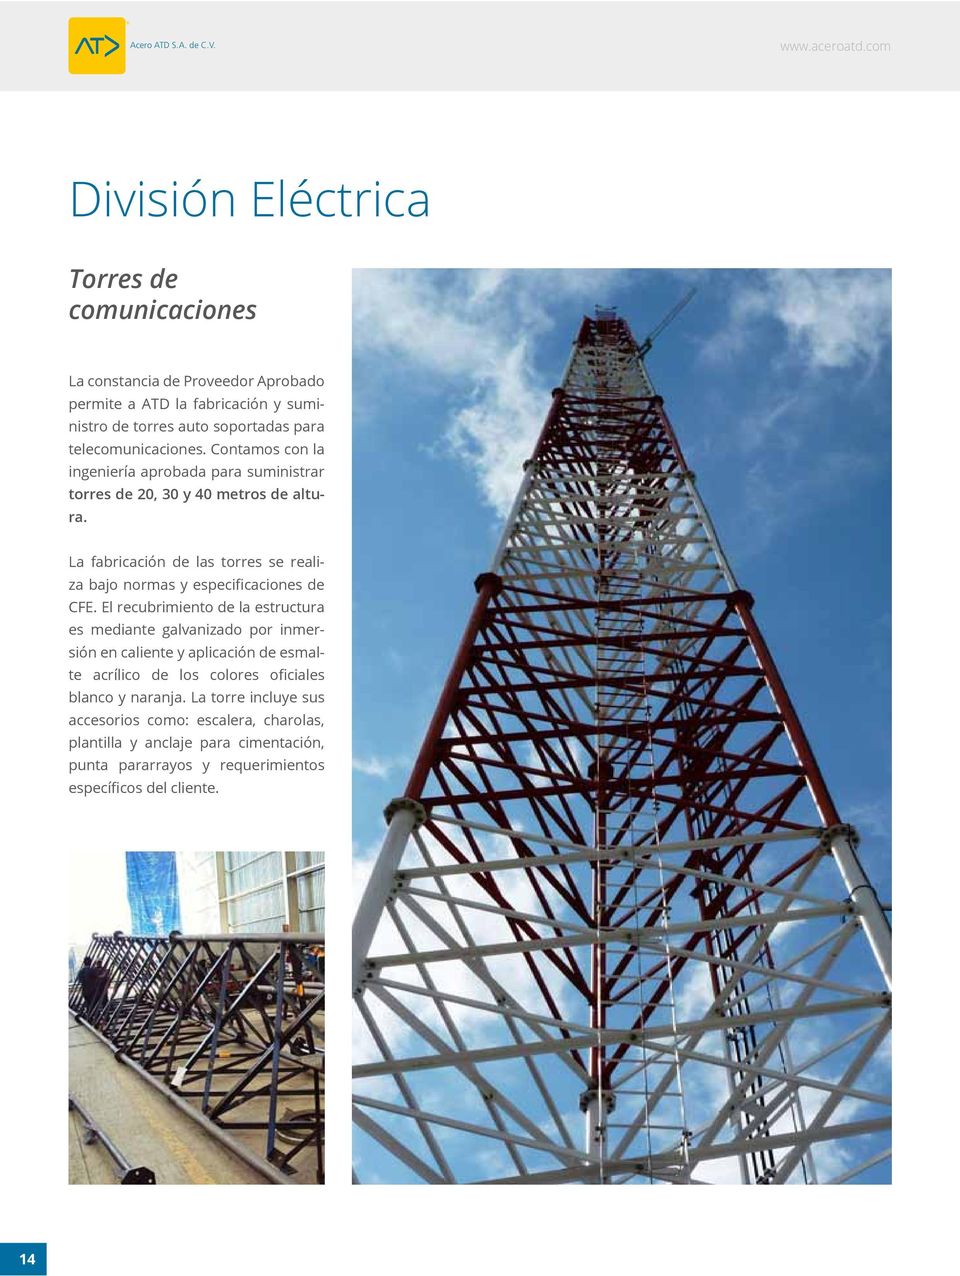 La fabricación de las torres se realiza bajo normas y especificaciones de CFE.